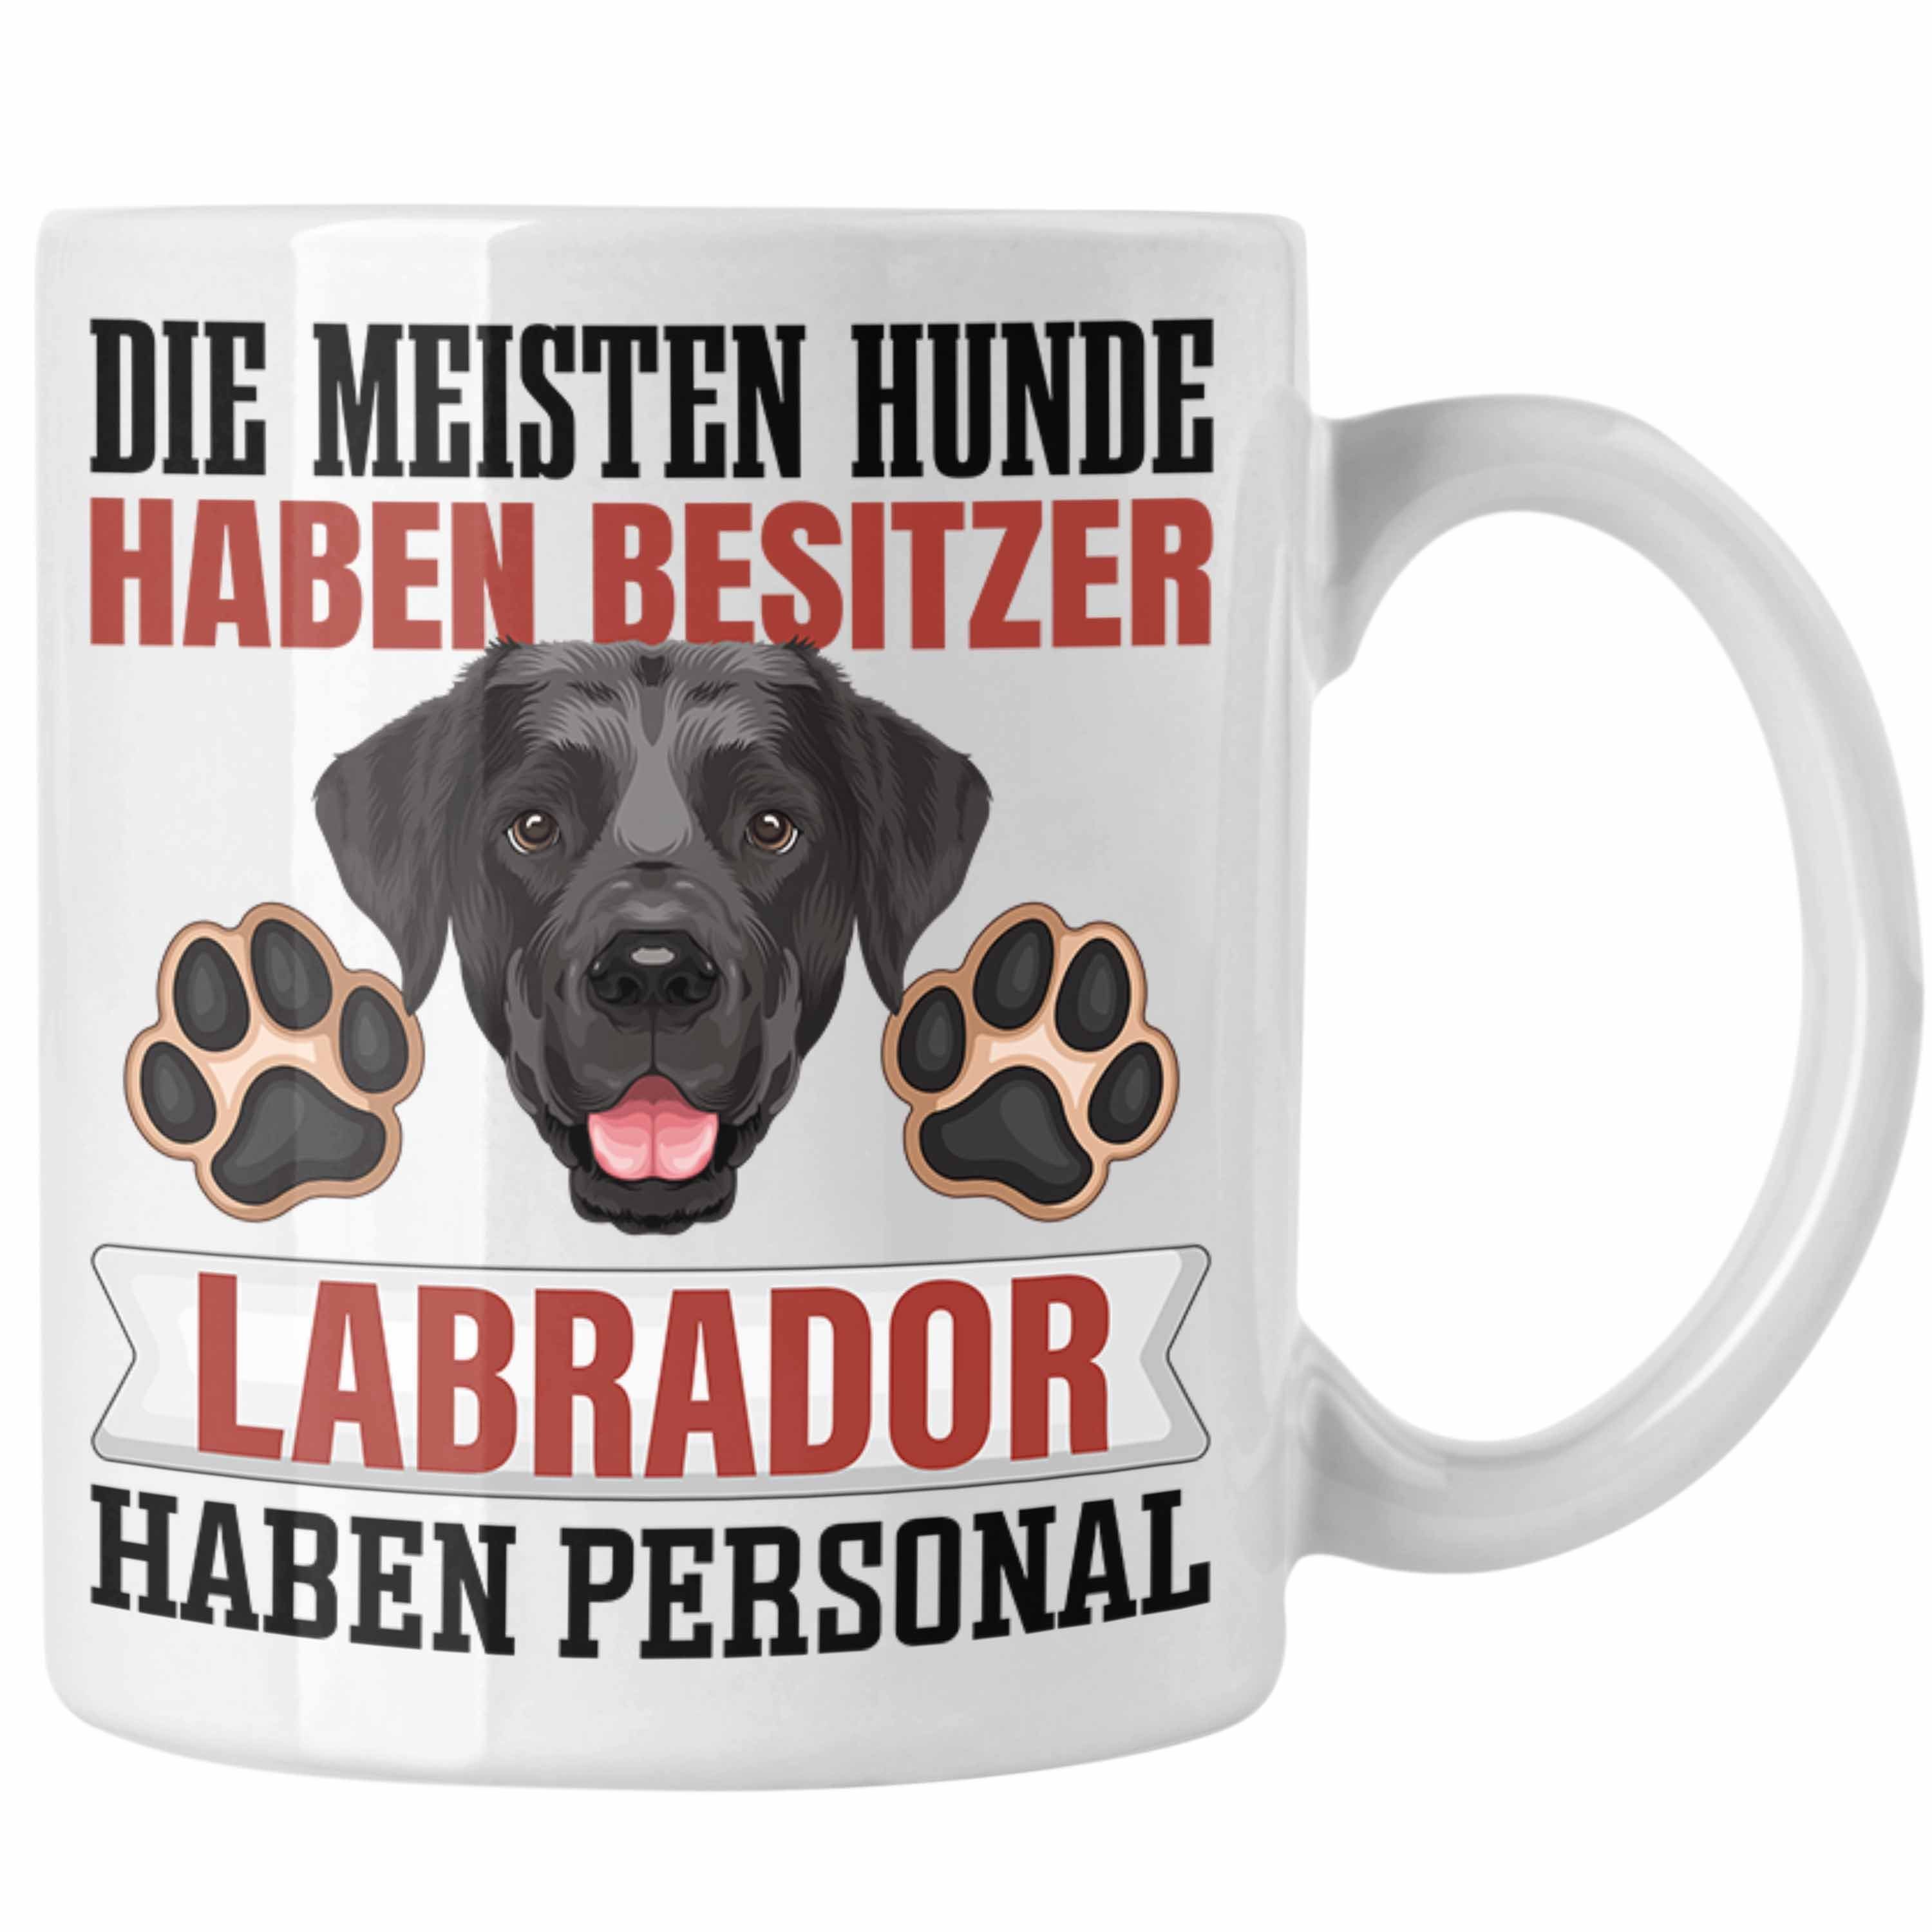 Weiss Lustiger Besitzer Geschenk Tasse Labrador Besitzer Spruch Trendation Geschenkidee Tasse